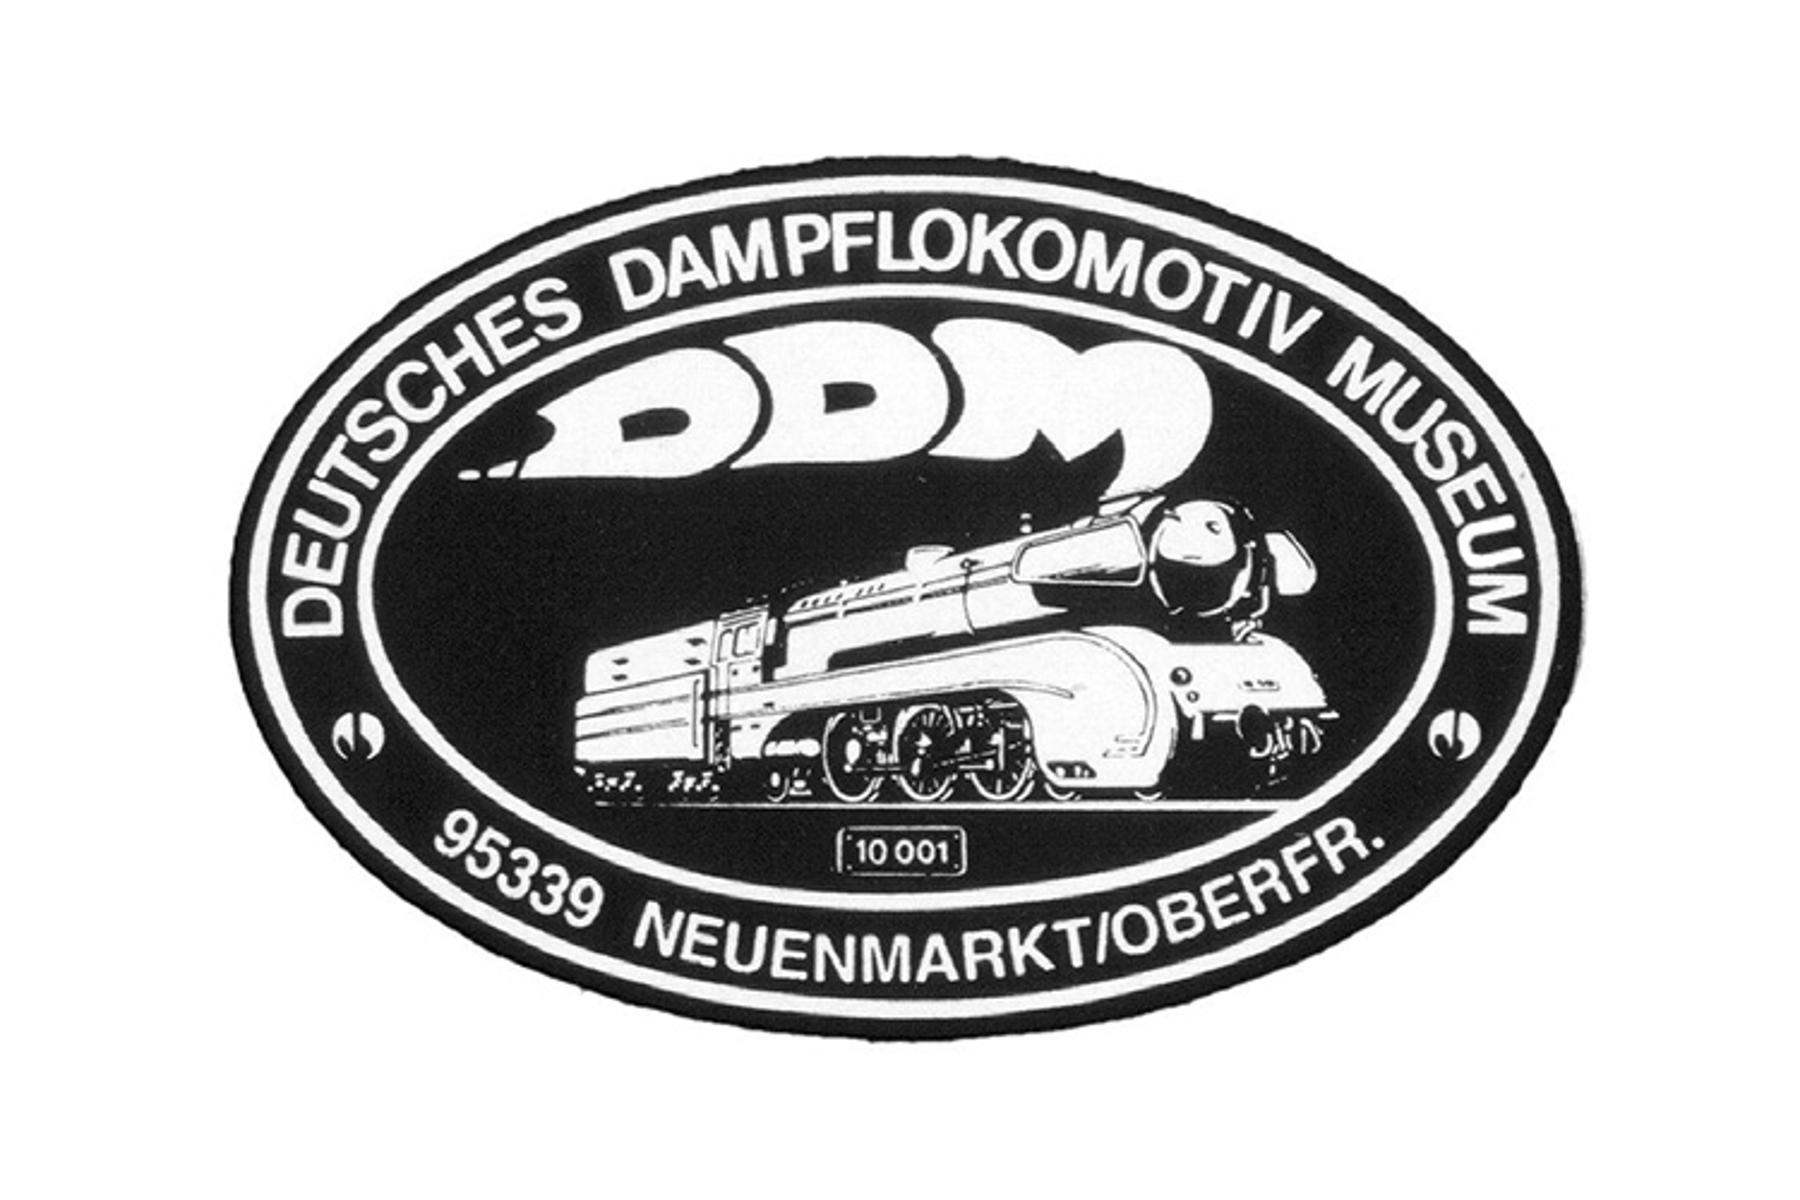 Werbung für das Deutsche Dampflokomotiv-Museum in Neuenmarkt
                 title=